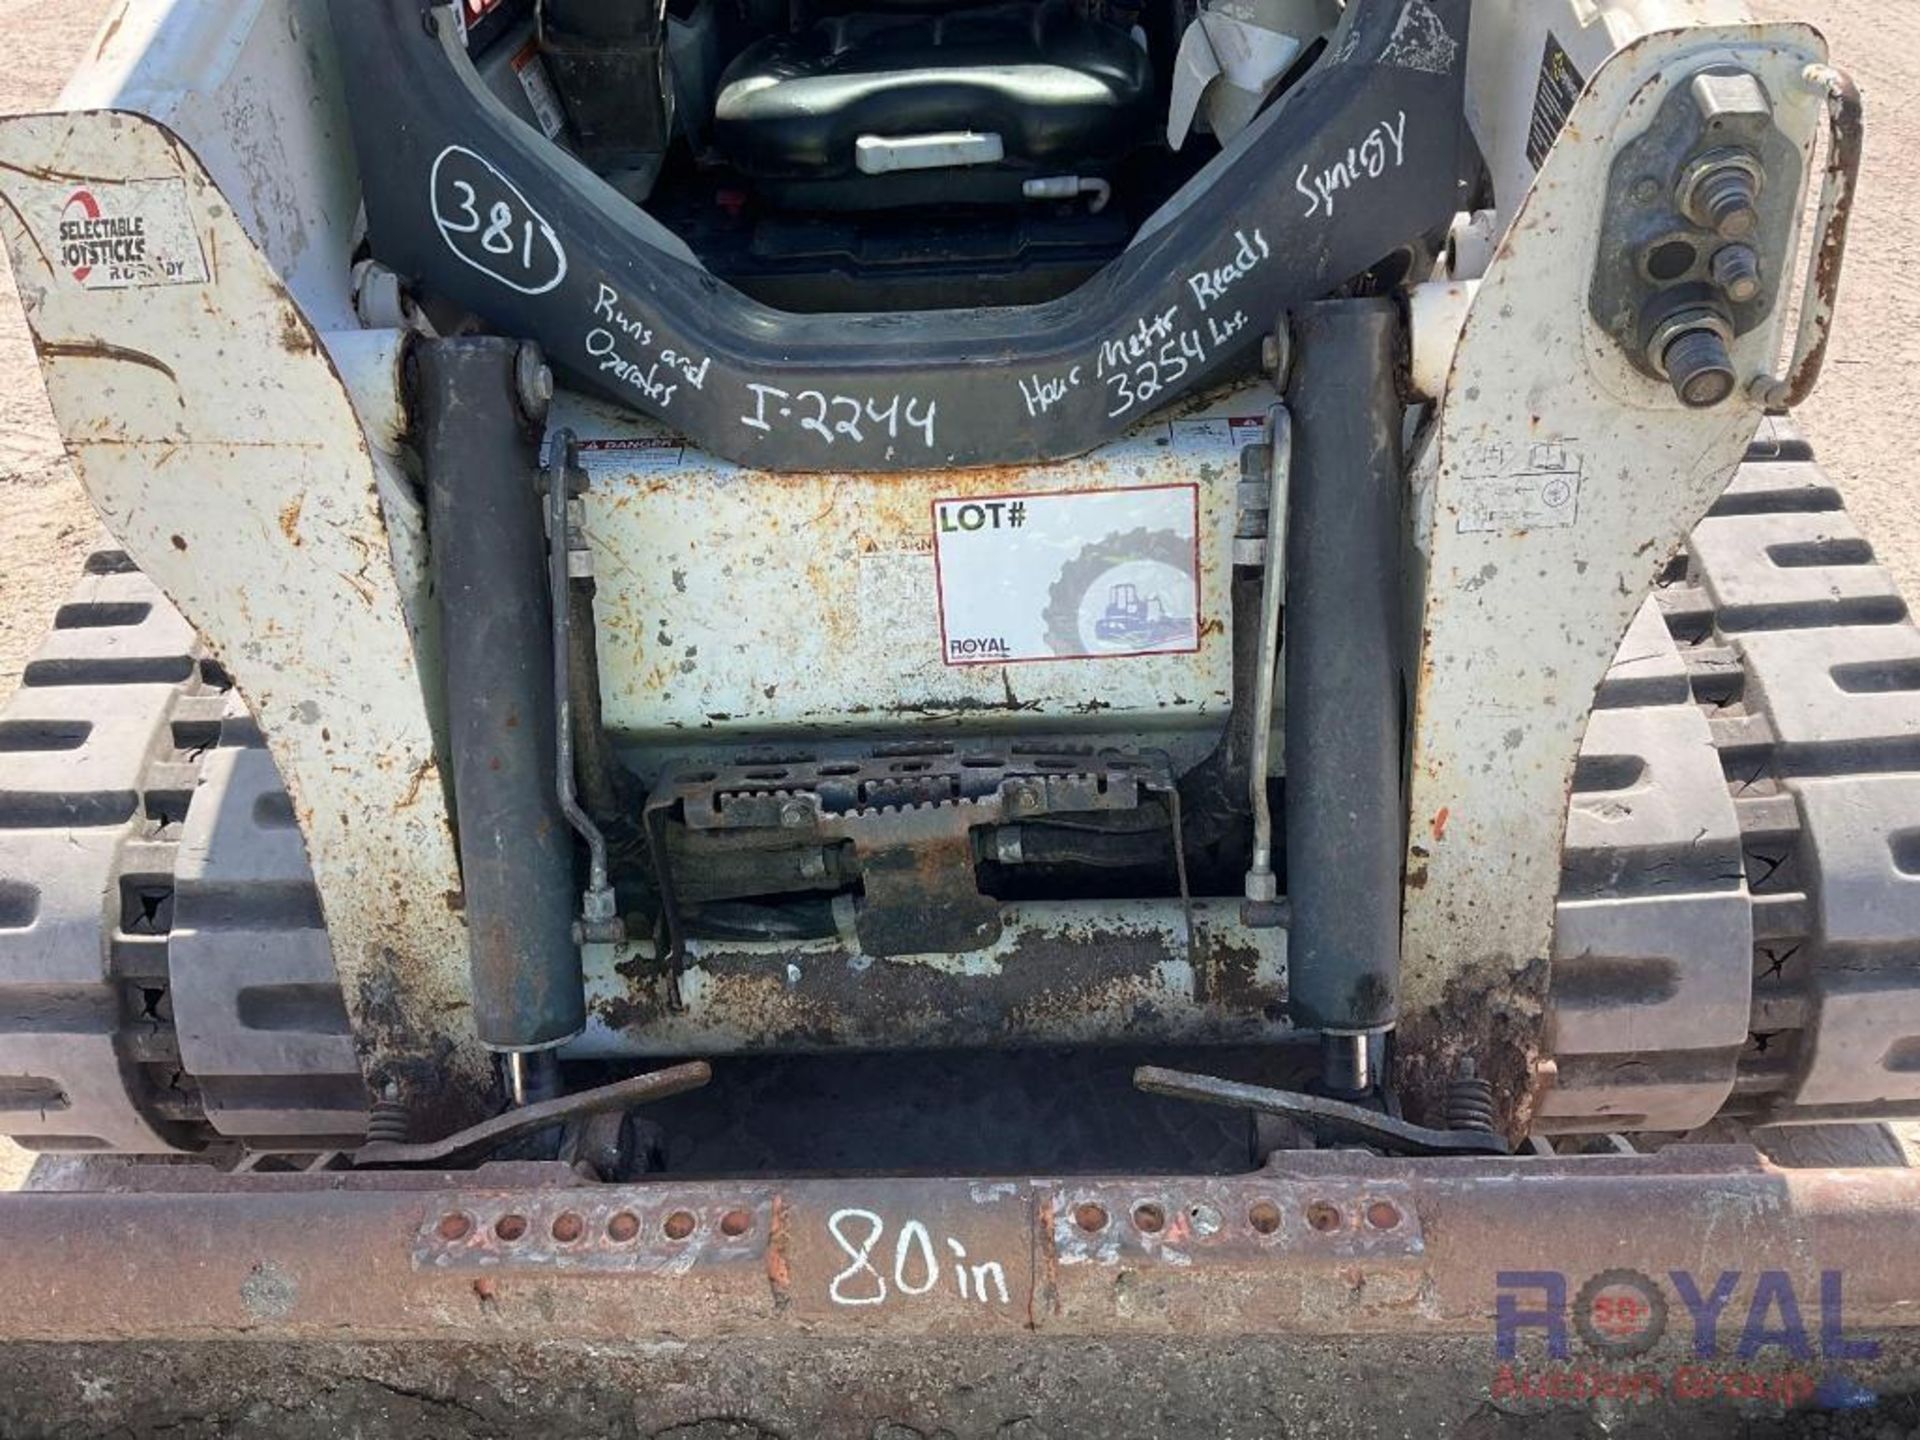 2017 Bobcat T740 Compact Track Loader Skid Steer - Image 23 of 23